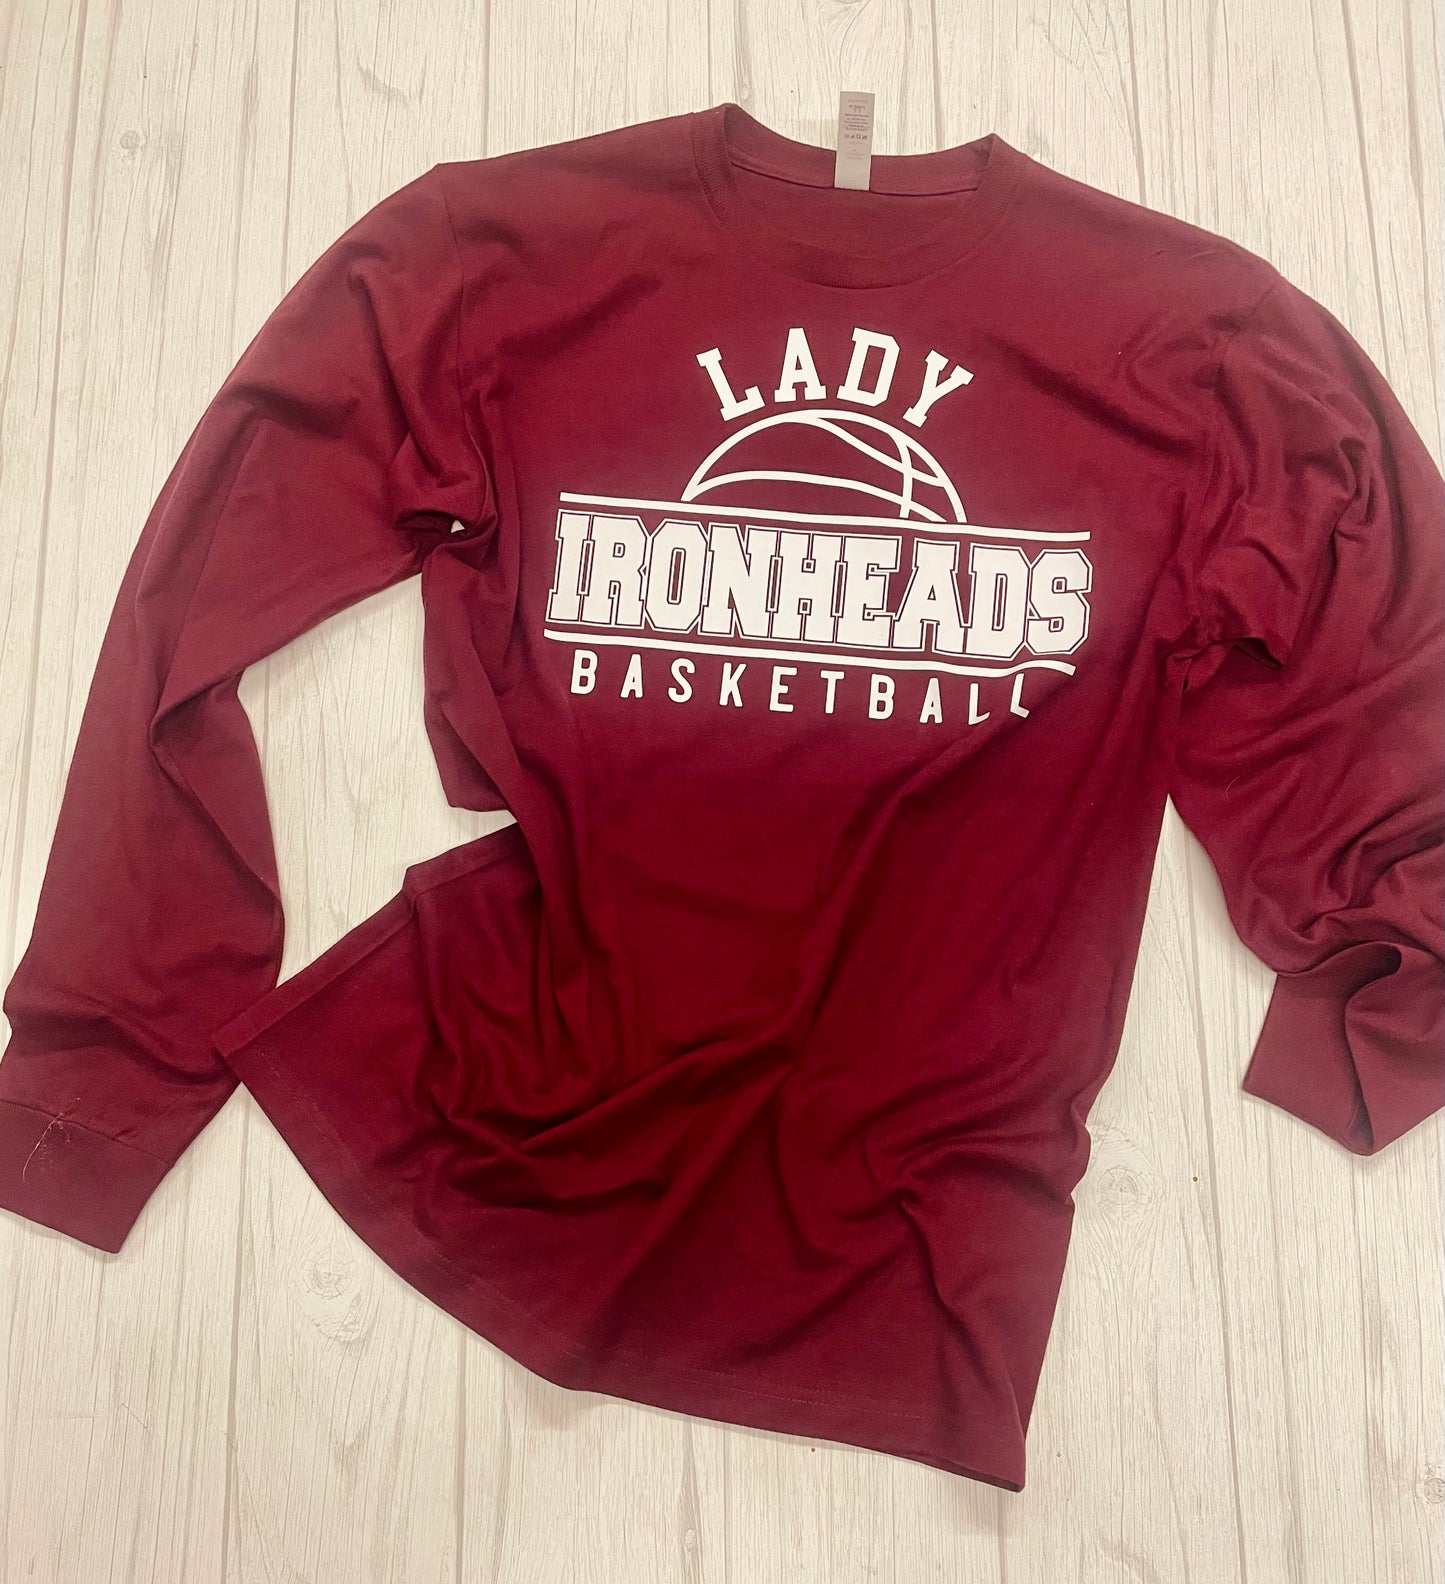 Lady Ironheads Basketball